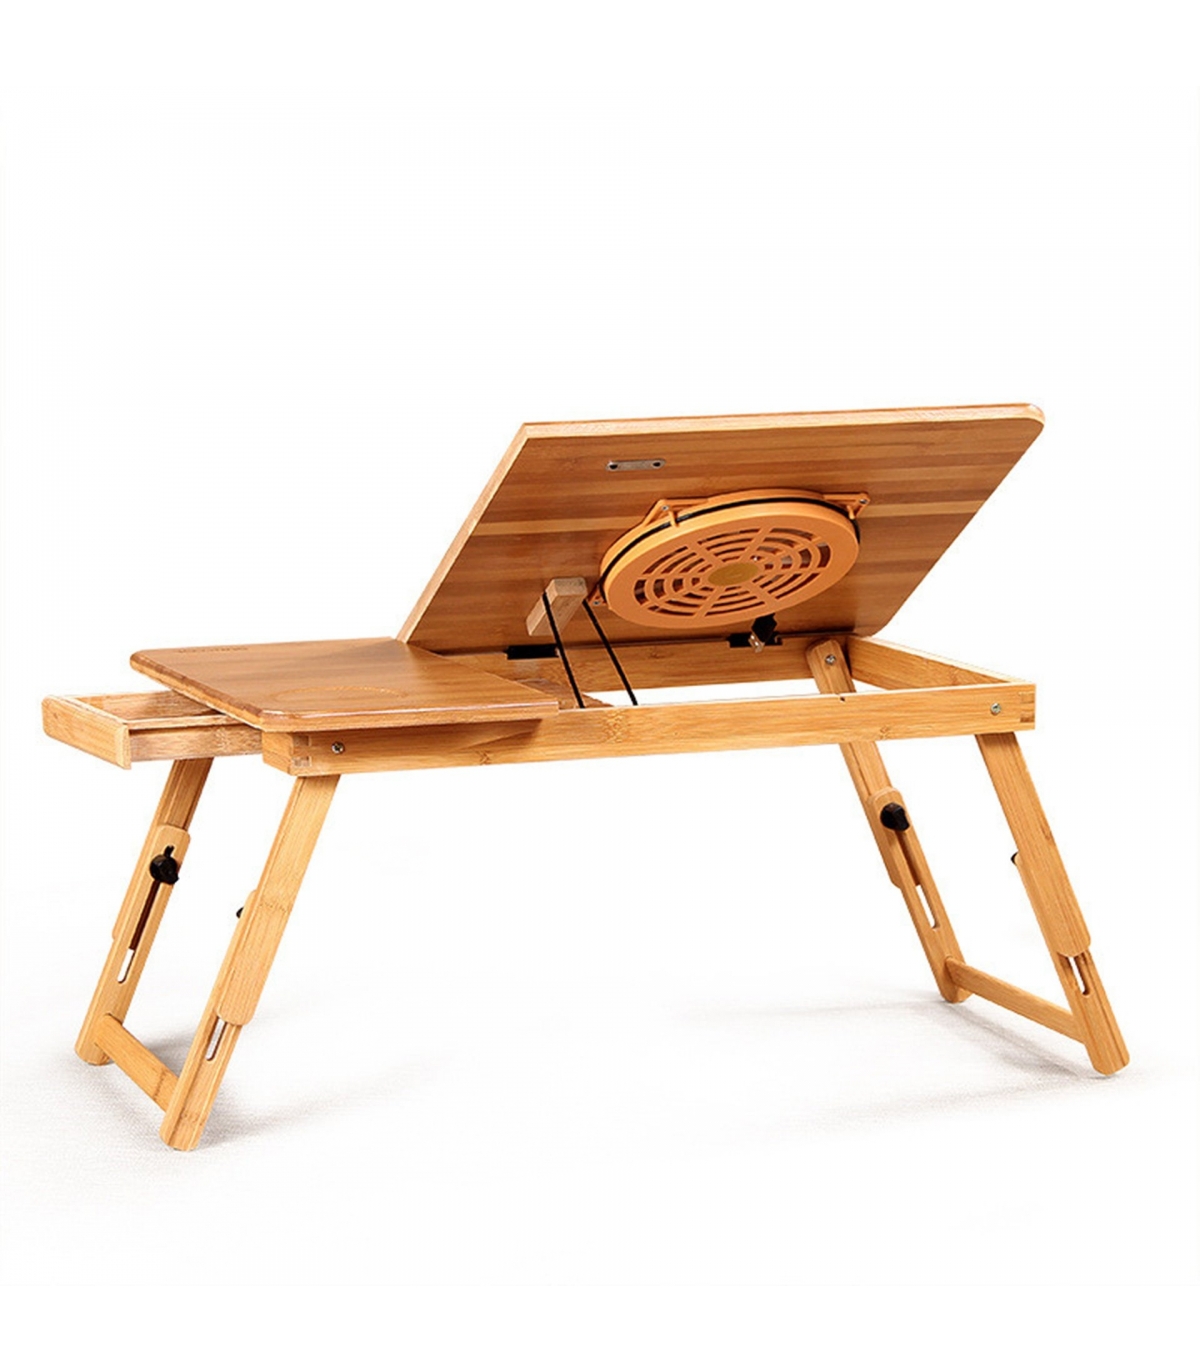 میز-چوبی-از-جنس-بامبو-لپ-تاپ-55-سانتی-متری-همراه-با-فن-مدل-b-94.jpg